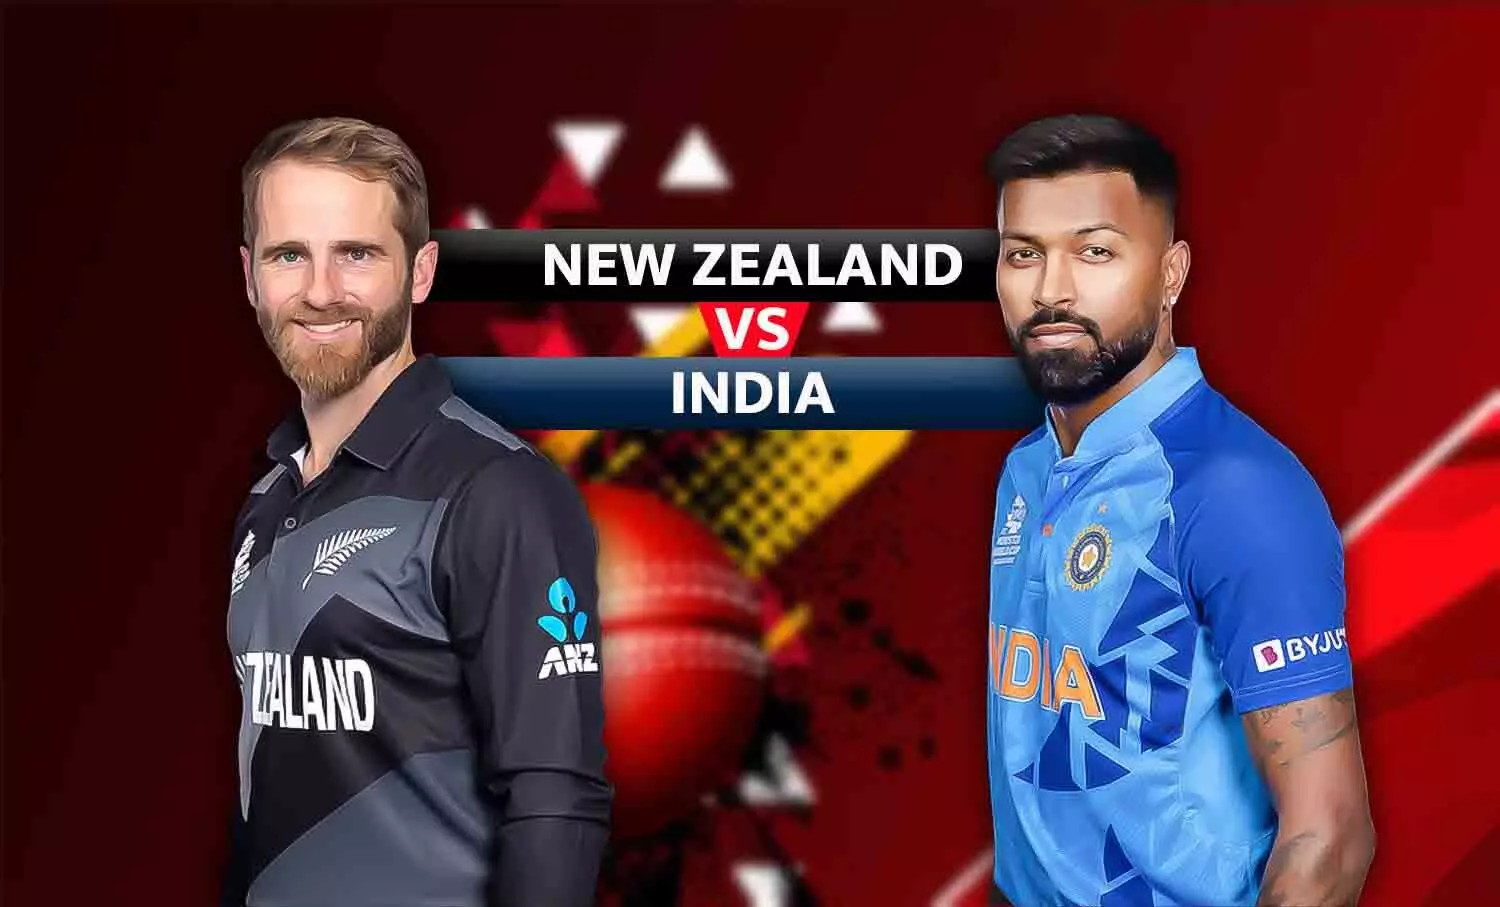 IND VS NZ, 1st T20: इस खतरनाक बल्लेबाज से ओपनिंग करा सकते हैं कप्तान हार्दिक पांड्या, न्यूजीलैंड के गेंदबाजों के छक्के छुड़ा देगा